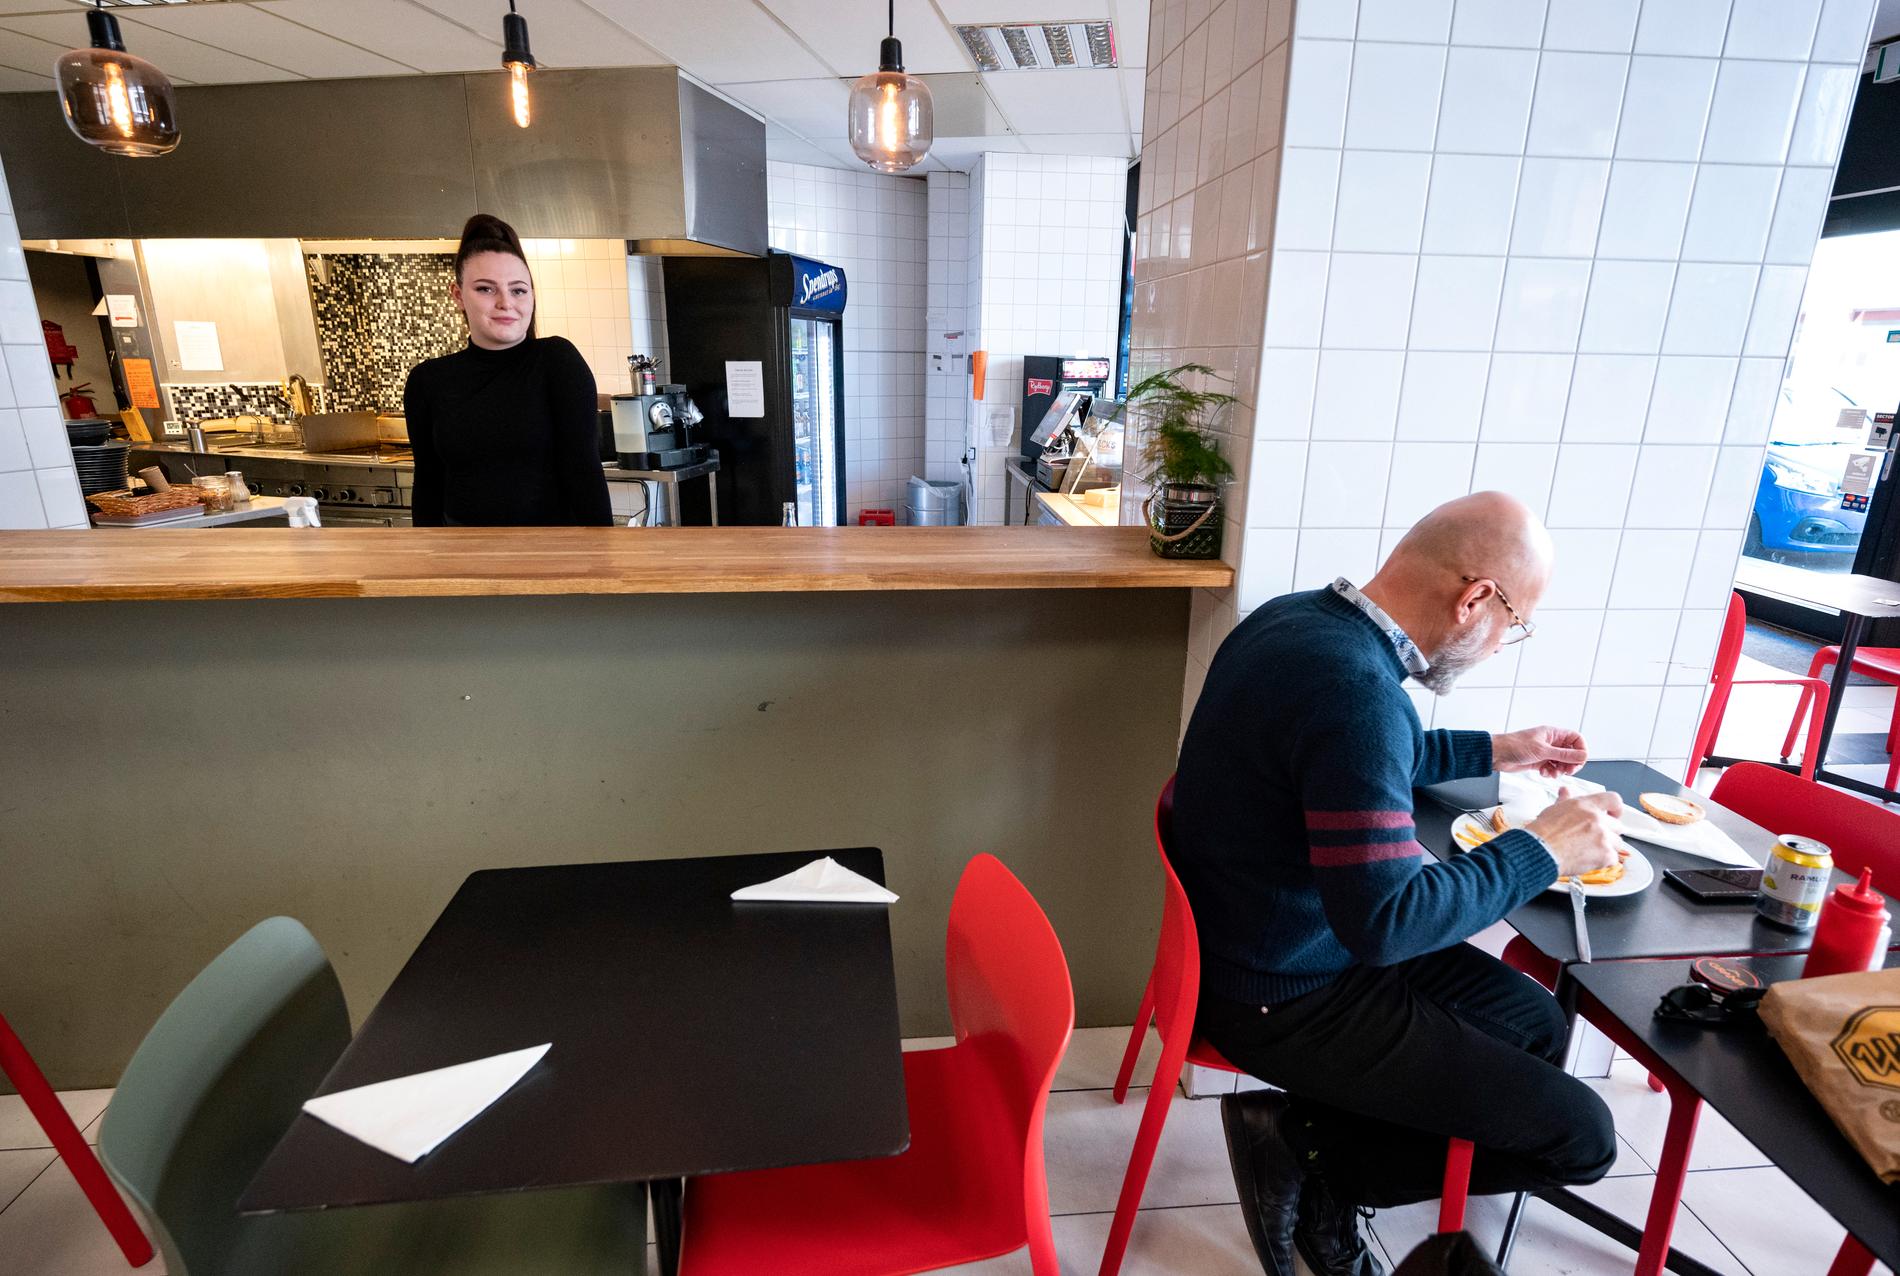 Natalie Hallbäck på restaurangen Stippes i Malmö där man satt bord framför bardisken för att anpassa sig till de nya reglerna får att minska risken för spridning av coronaviruset.